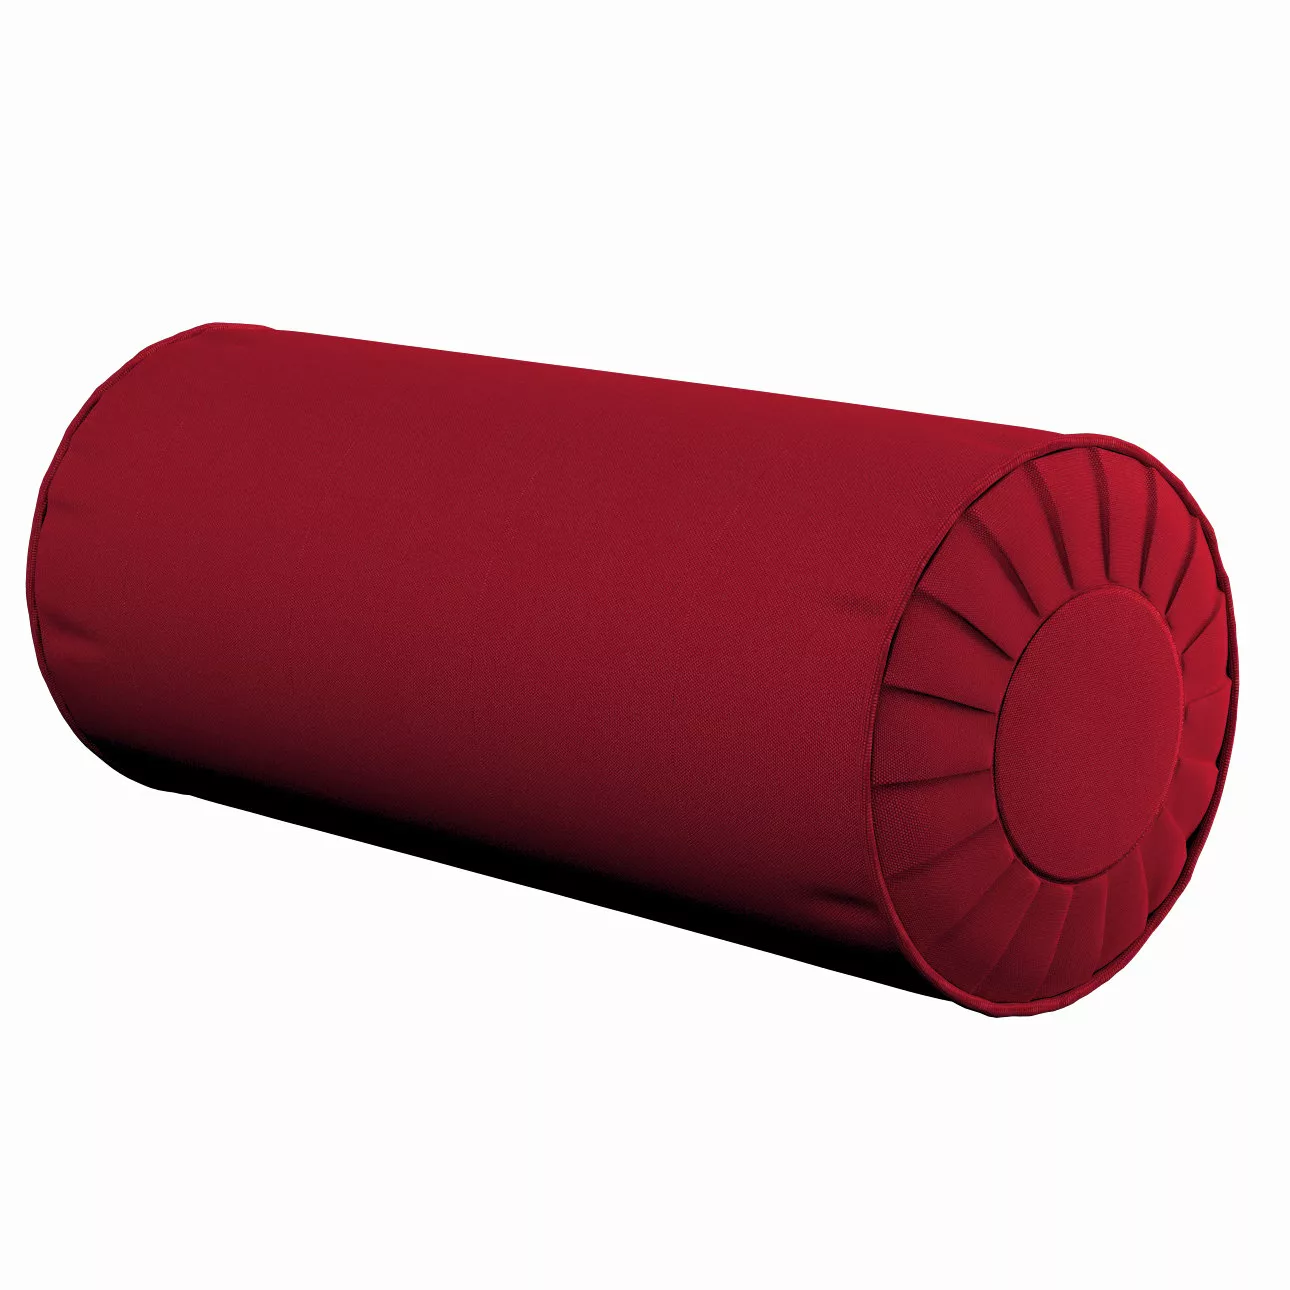 Nackenrolle mit Falten, rot, Ø 20 x 50 cm, Etna (705-60) günstig online kaufen